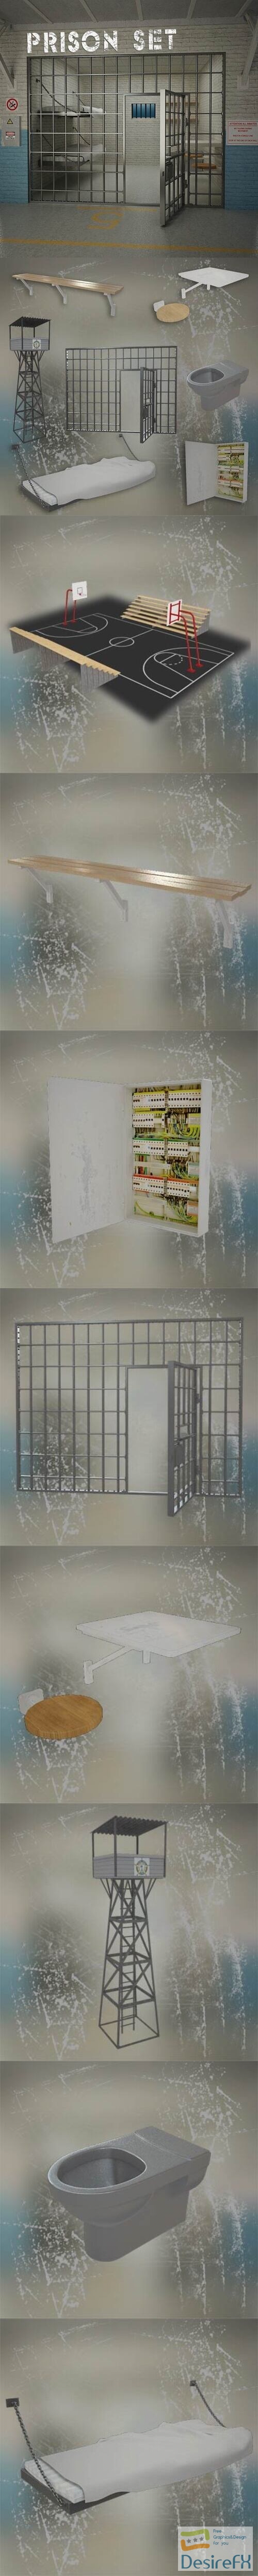 Prison Set 3D Model